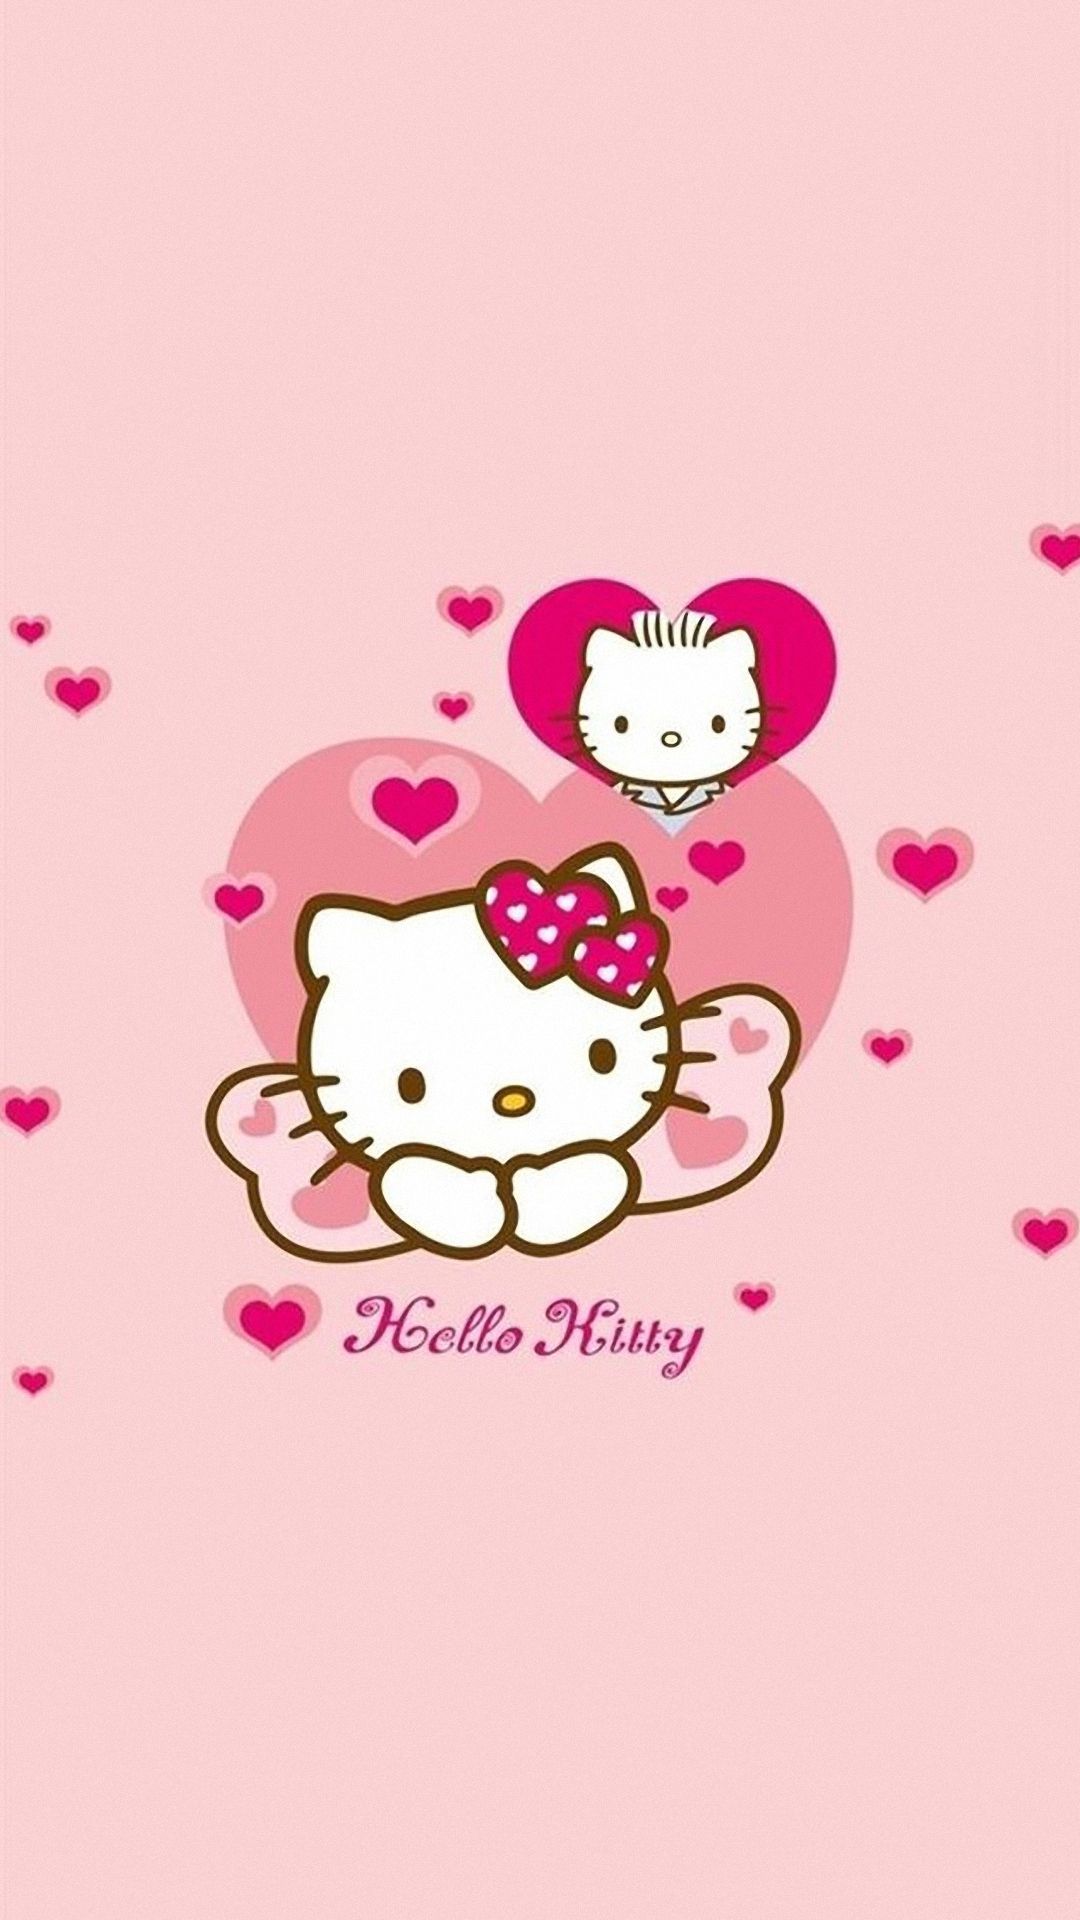 Nền Kitty đáng yêu miễn phí - Bạn đang tìm kiếm một hình nền miễn phí cho thiết bị của mình? Hãy tải hình nền Hello Kitty đáng yêu của chúng tôi ngay bây giờ và thưởng thức một thế giới toàn sắc màu.